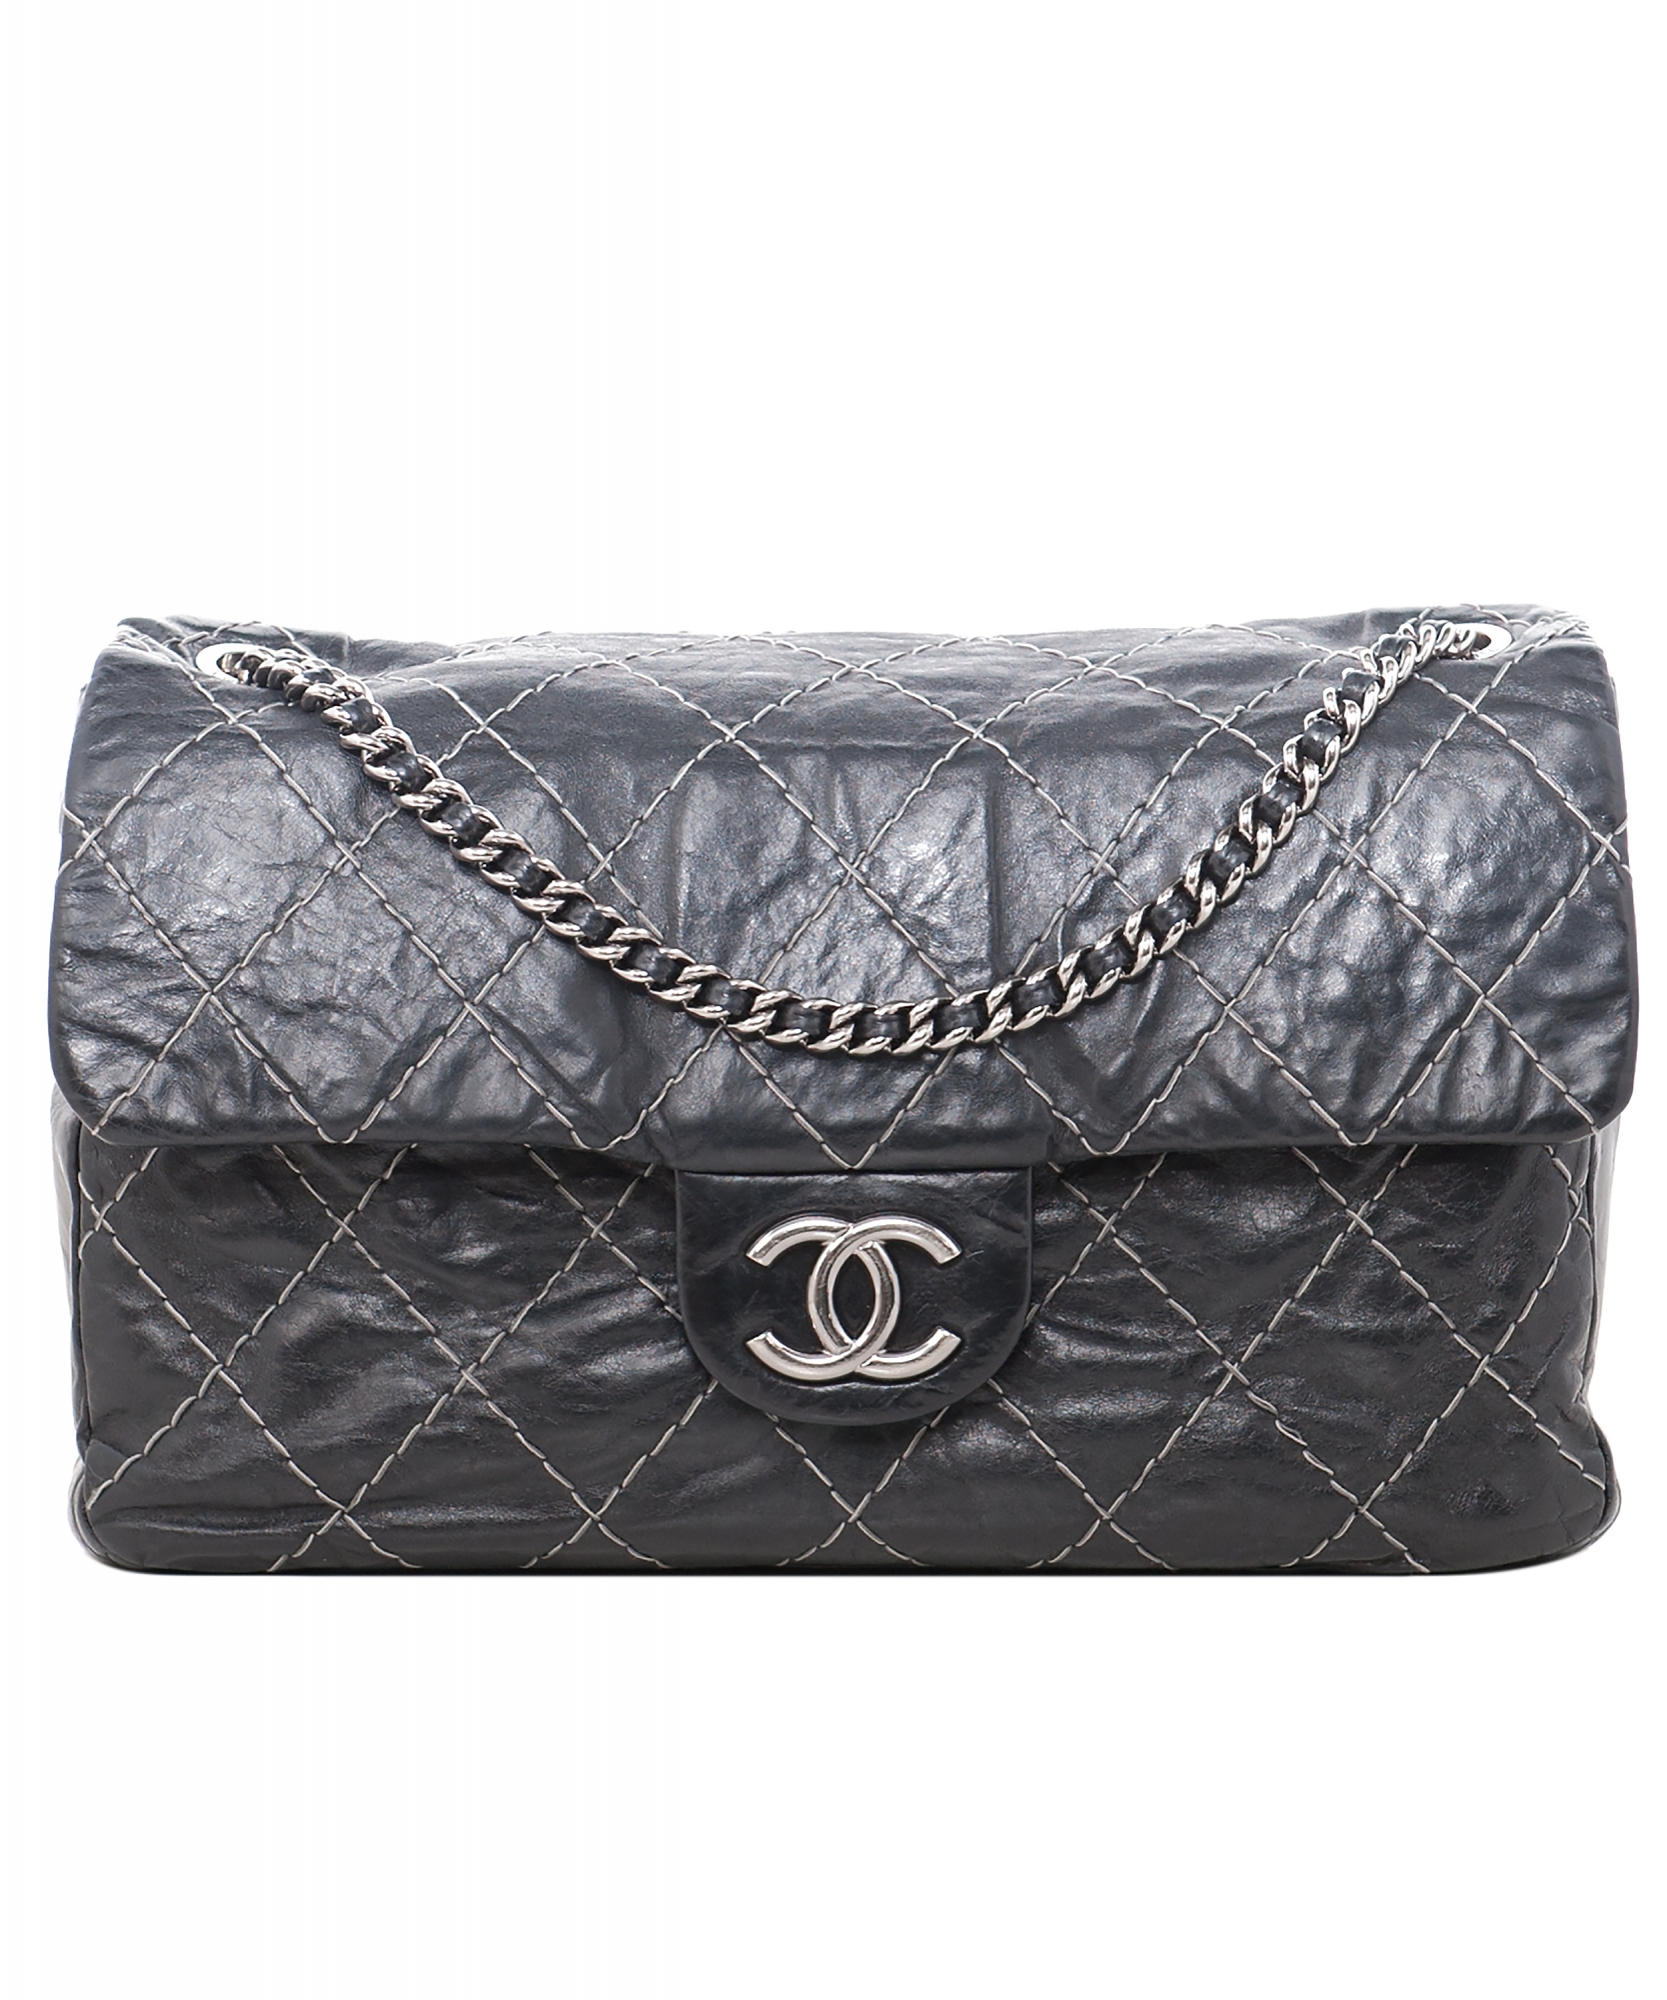 Chanel Twisted Flap Bag Glazed Calfskin Medium Black 985721